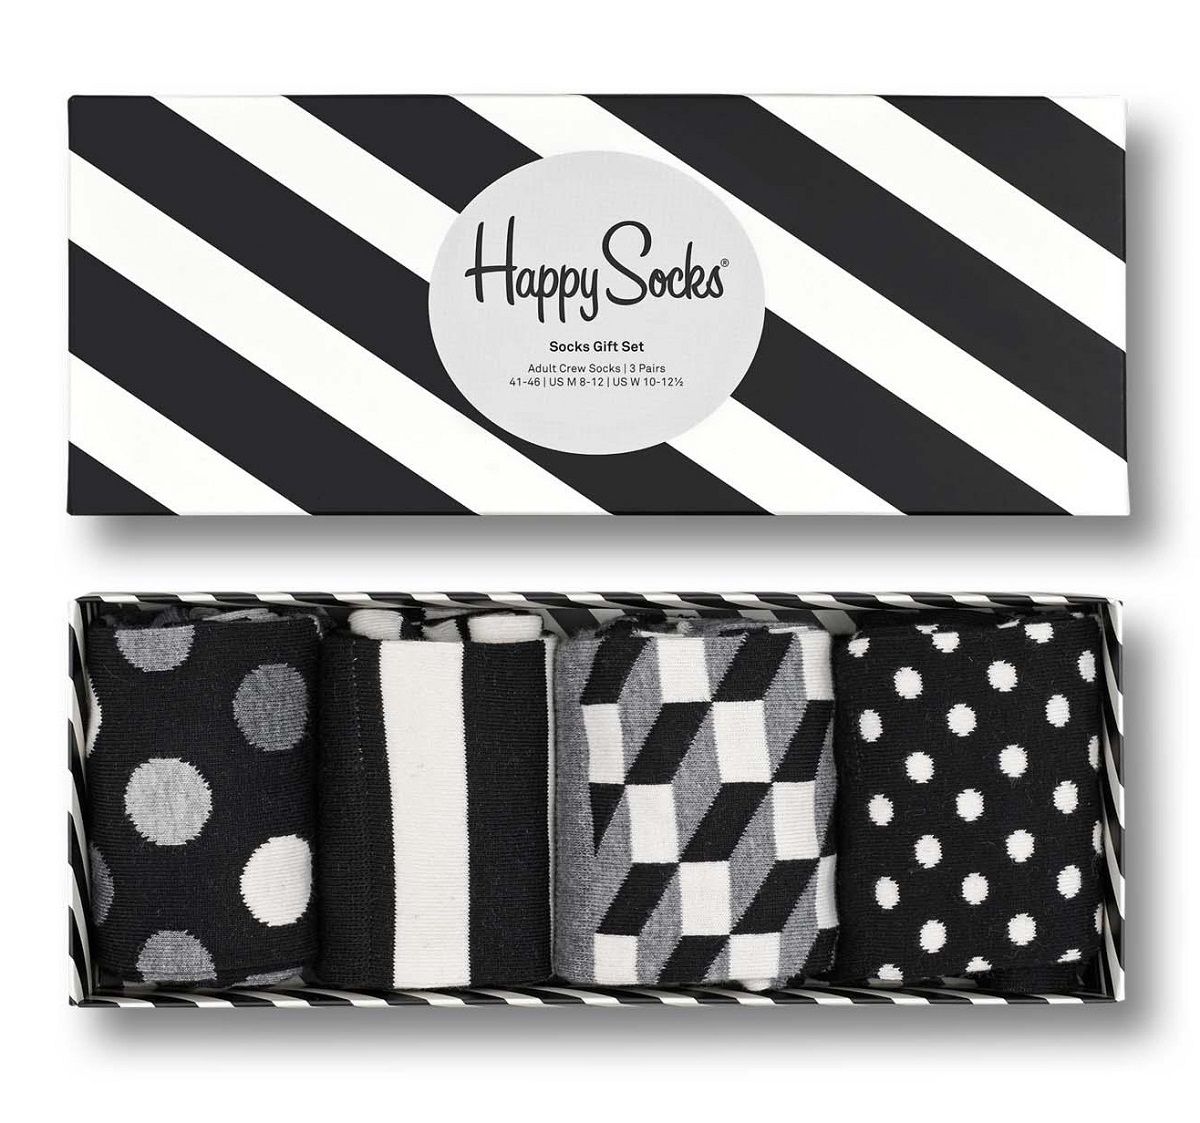 Подарочный набор носков 4-Pack Classic Black & White Socks Gift Set. В наборе 4 пары с разными принтами.